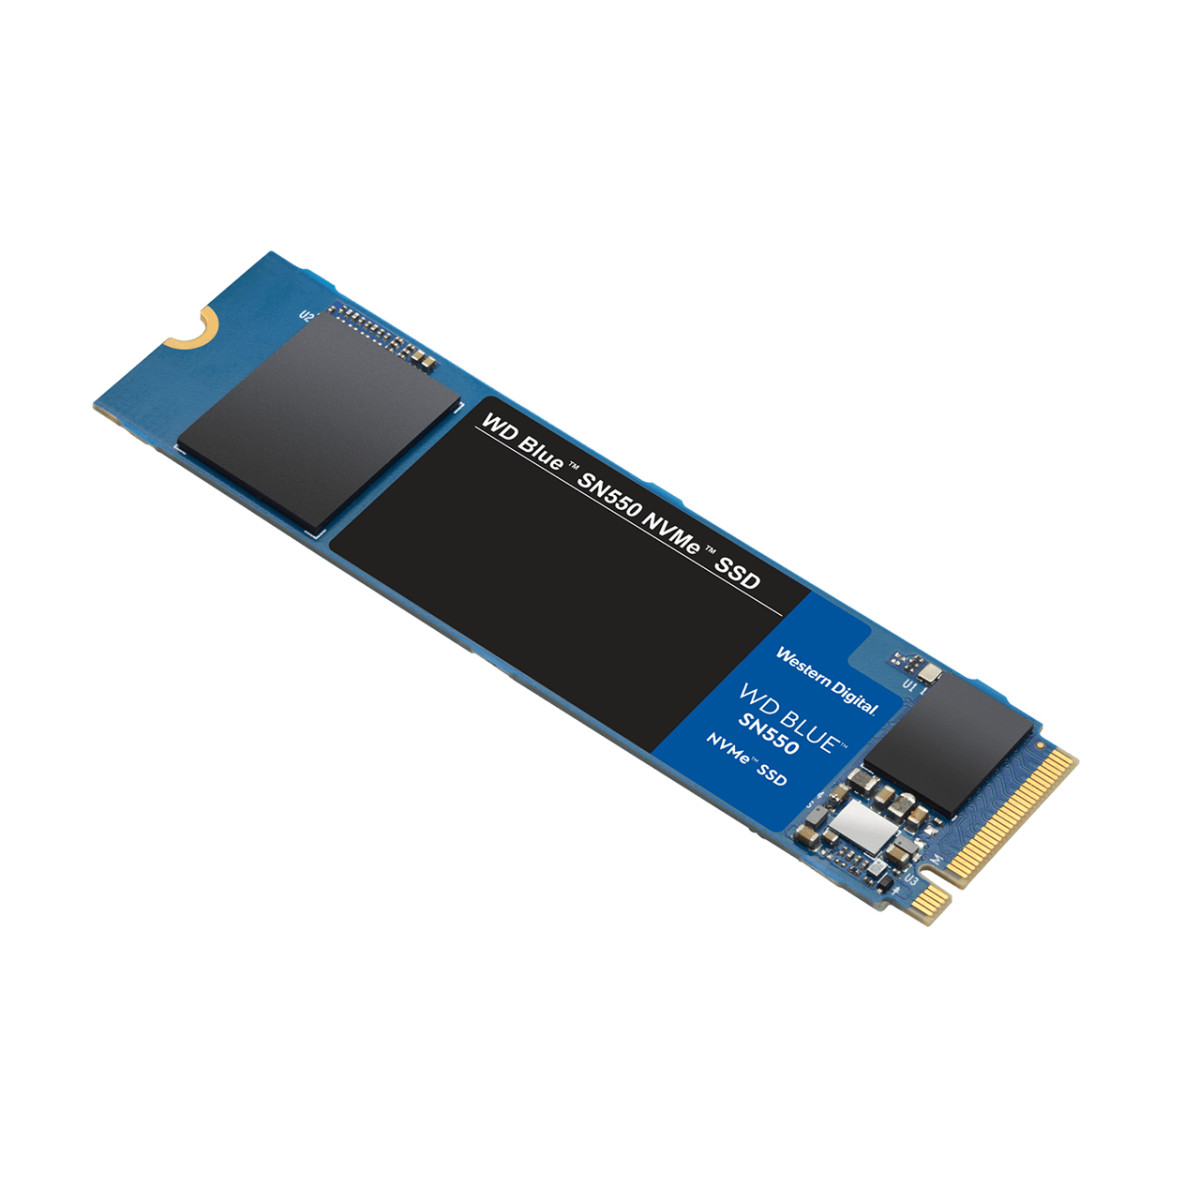 SSD Int 250GB Blue SN550 PCIe M.2